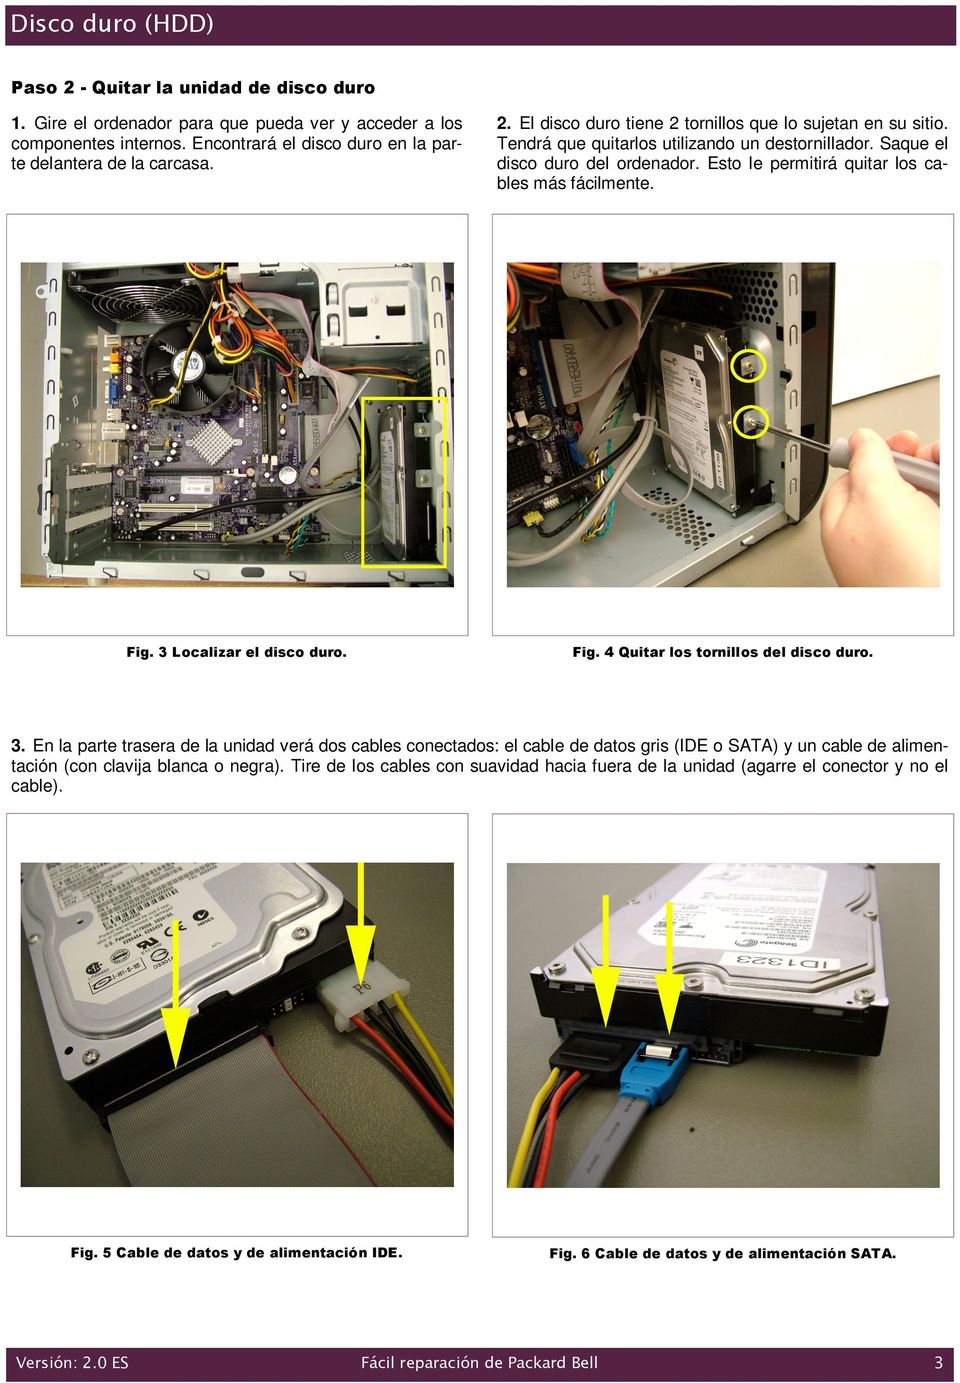 3. En la parte trasera de la unidad verá dos cables conectados: el cable de datos gris (IDE o SATA) y un cable de alimentación (con clavija blanca o negra).